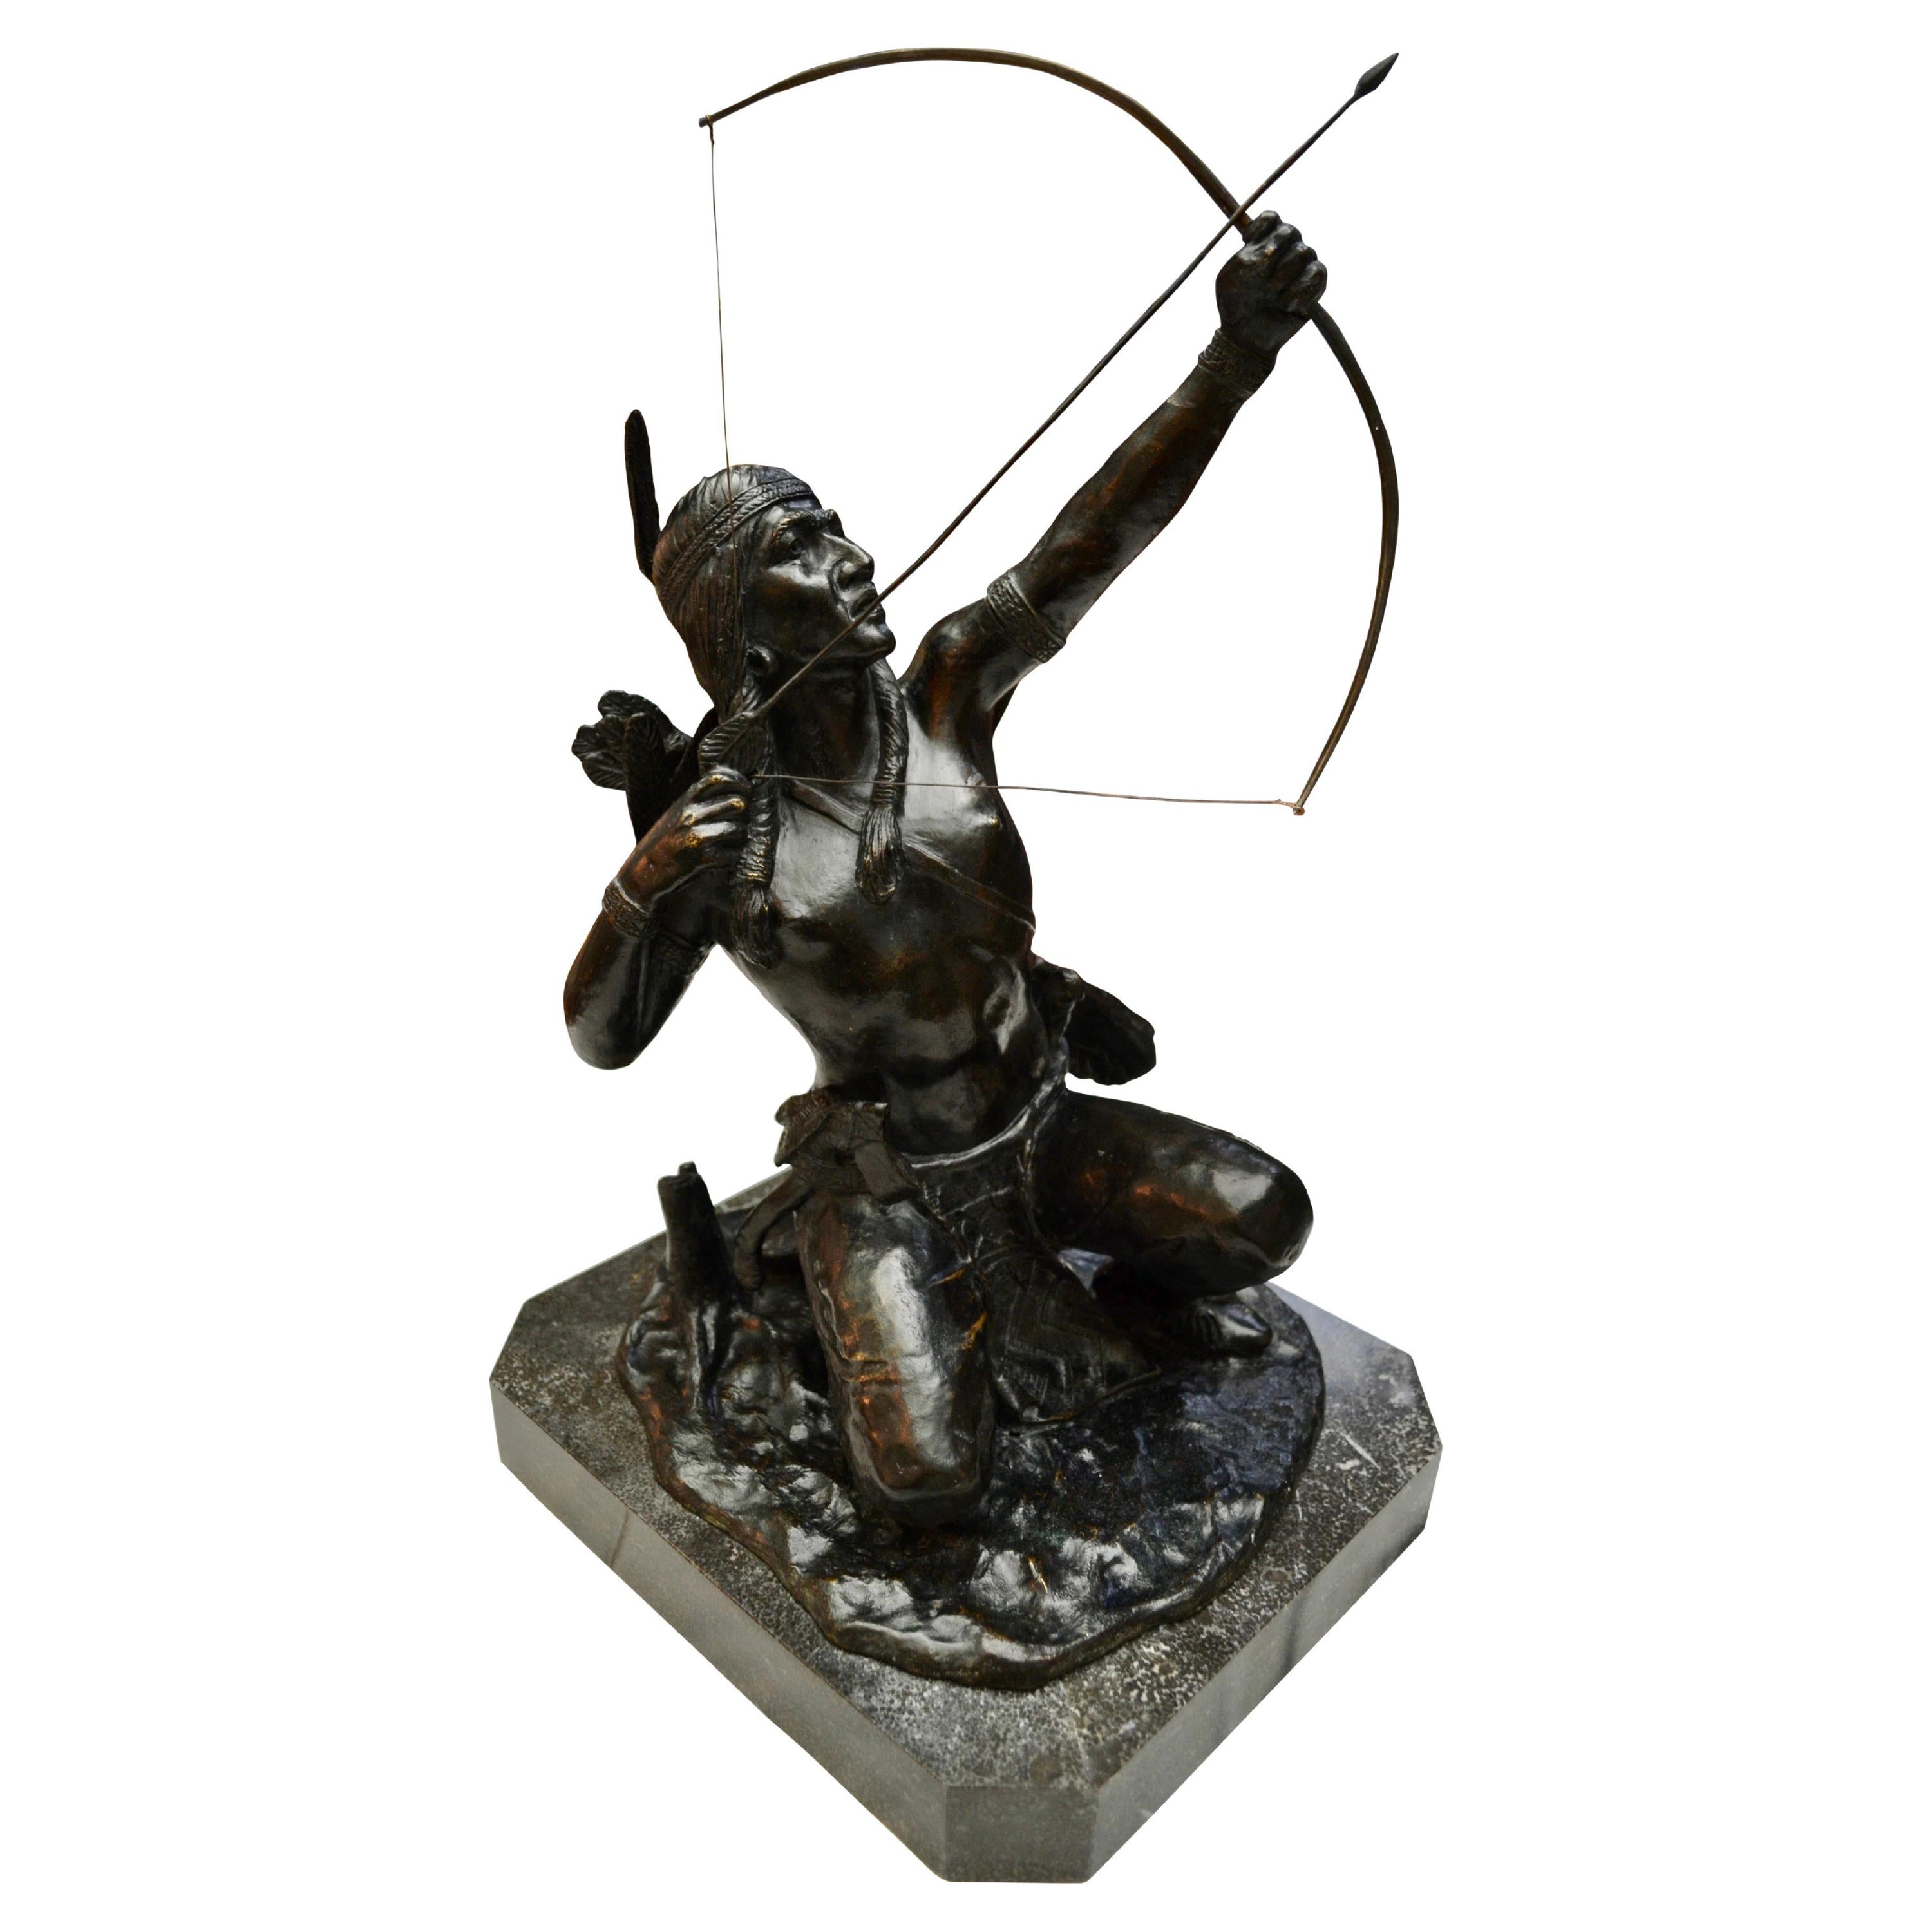 Seltene patinierte Bronzestatue eines indianischen Bogenschützen auf der Jagd